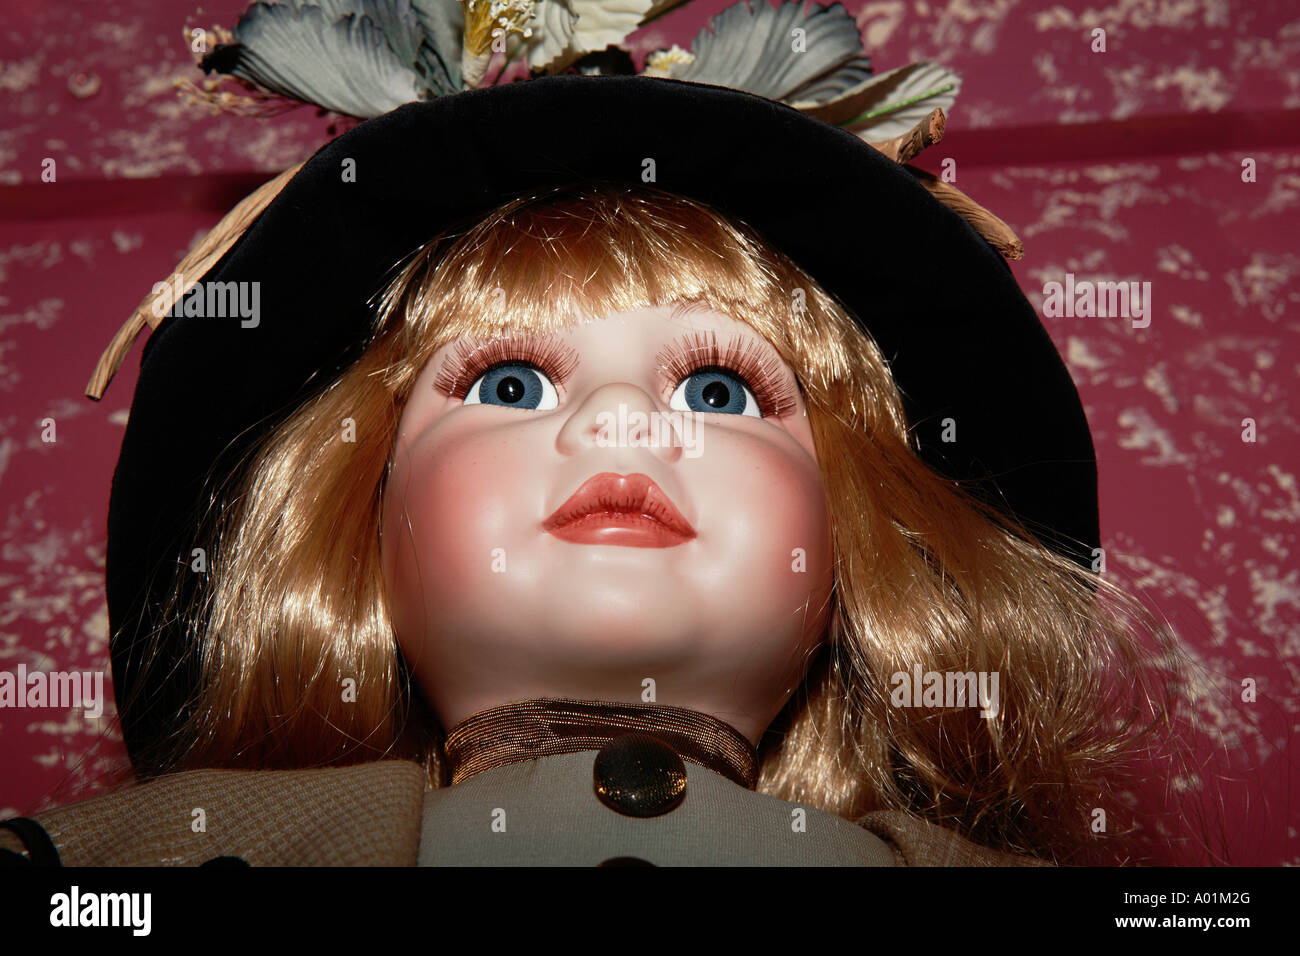 Bonita rubia Antique Doll con sombrero de terciopelo negro con adornos florales y la cara detalle Foto de stock